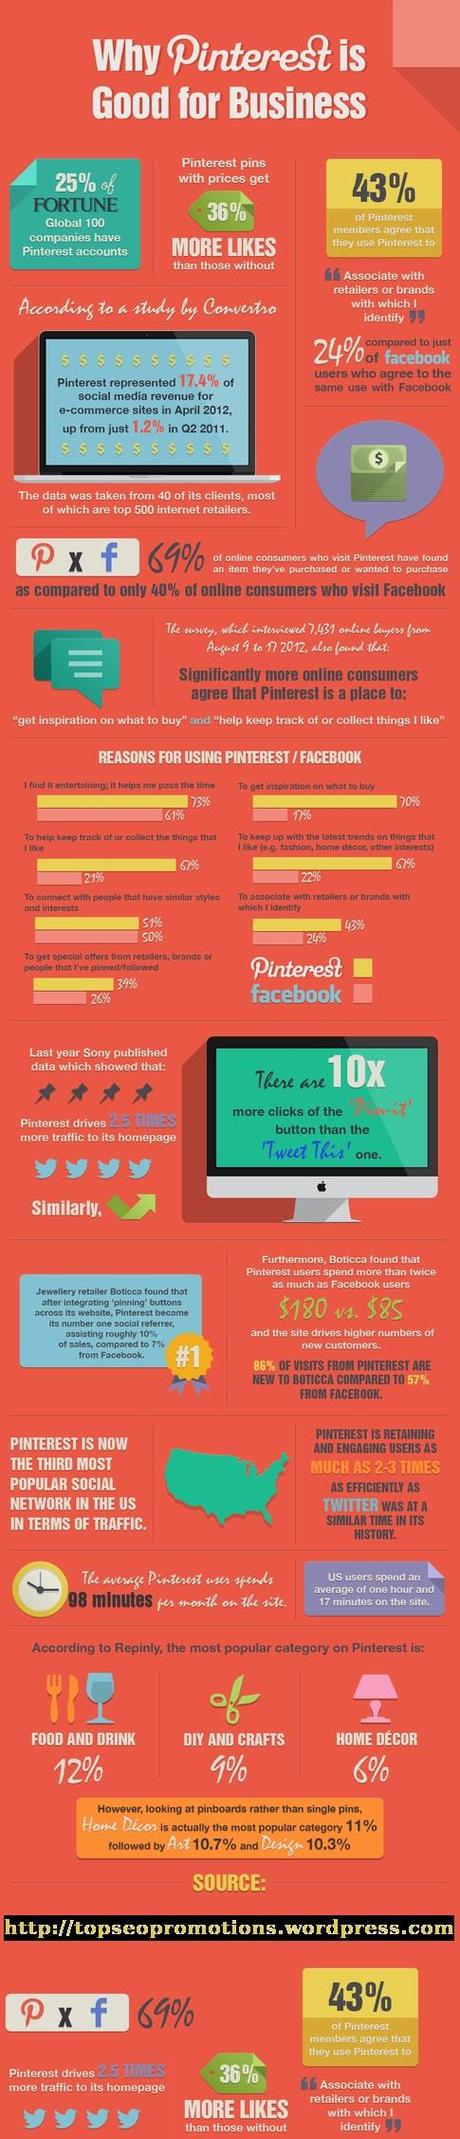 ¿Por qué Pinterest es buena para los negocios? #Infografía #Internet #SocialMedia